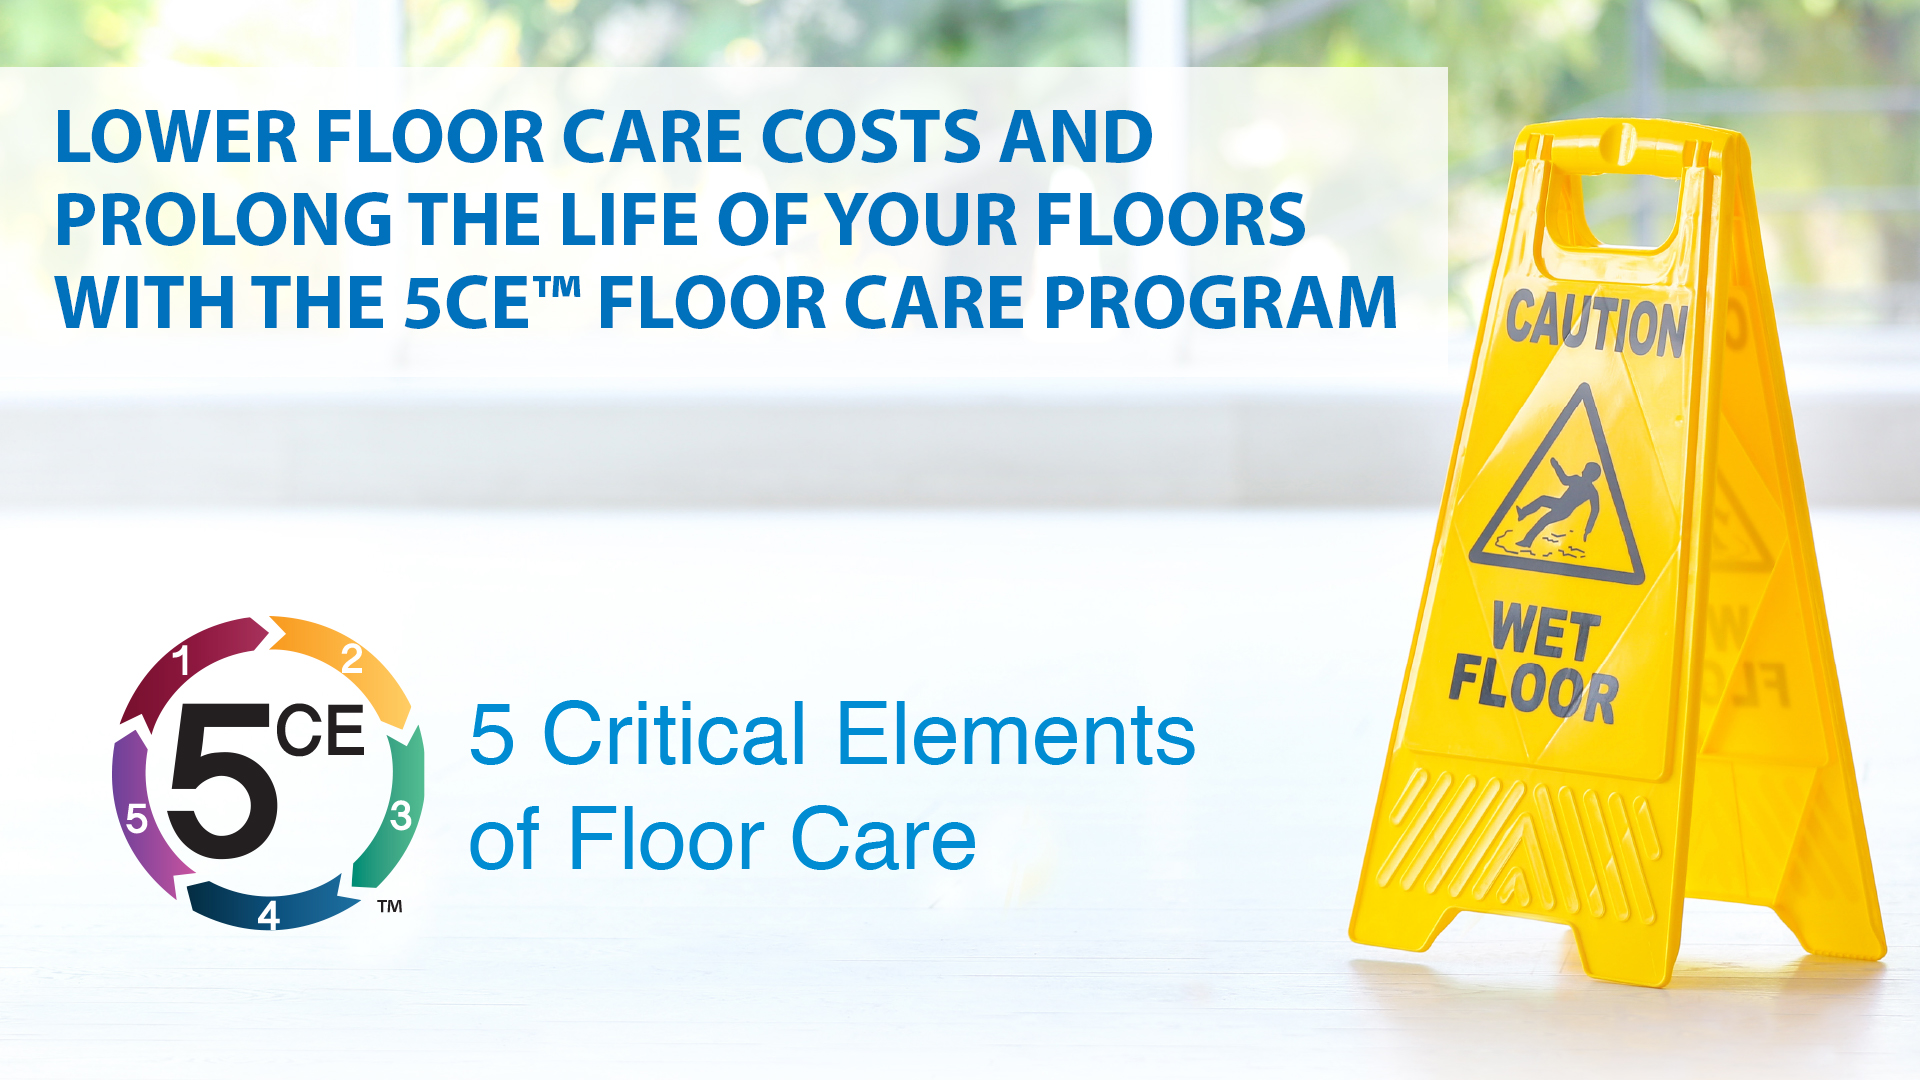 Product 5CE Floor Care Program